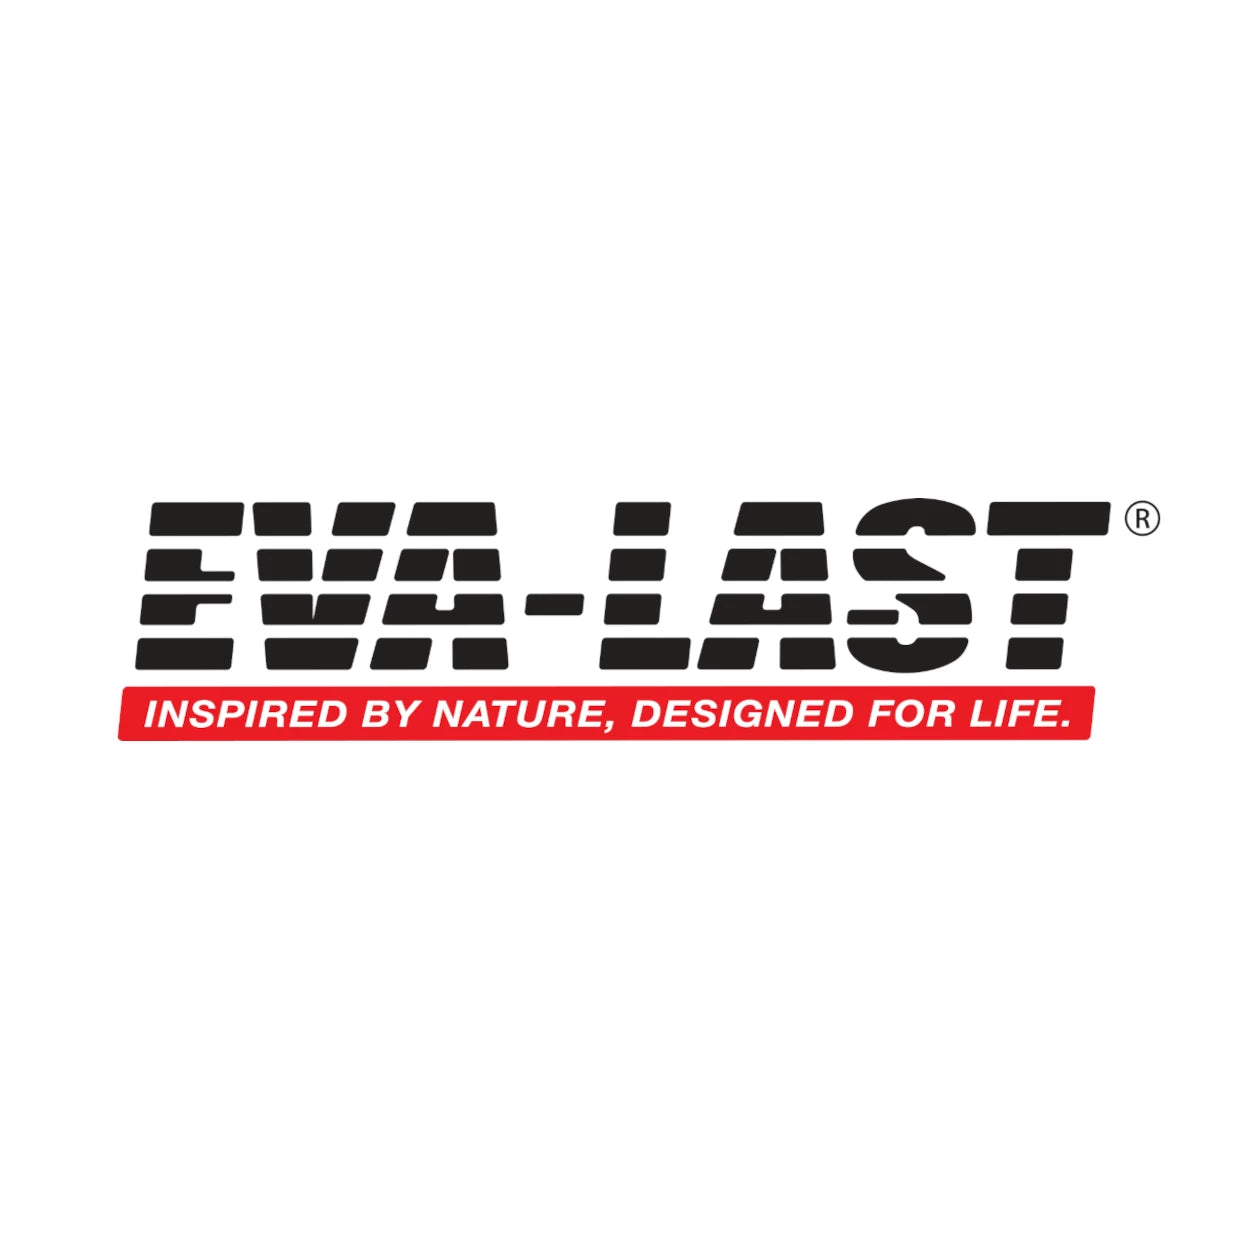 EVA-LAST Composite Decking, Screening & Cladding